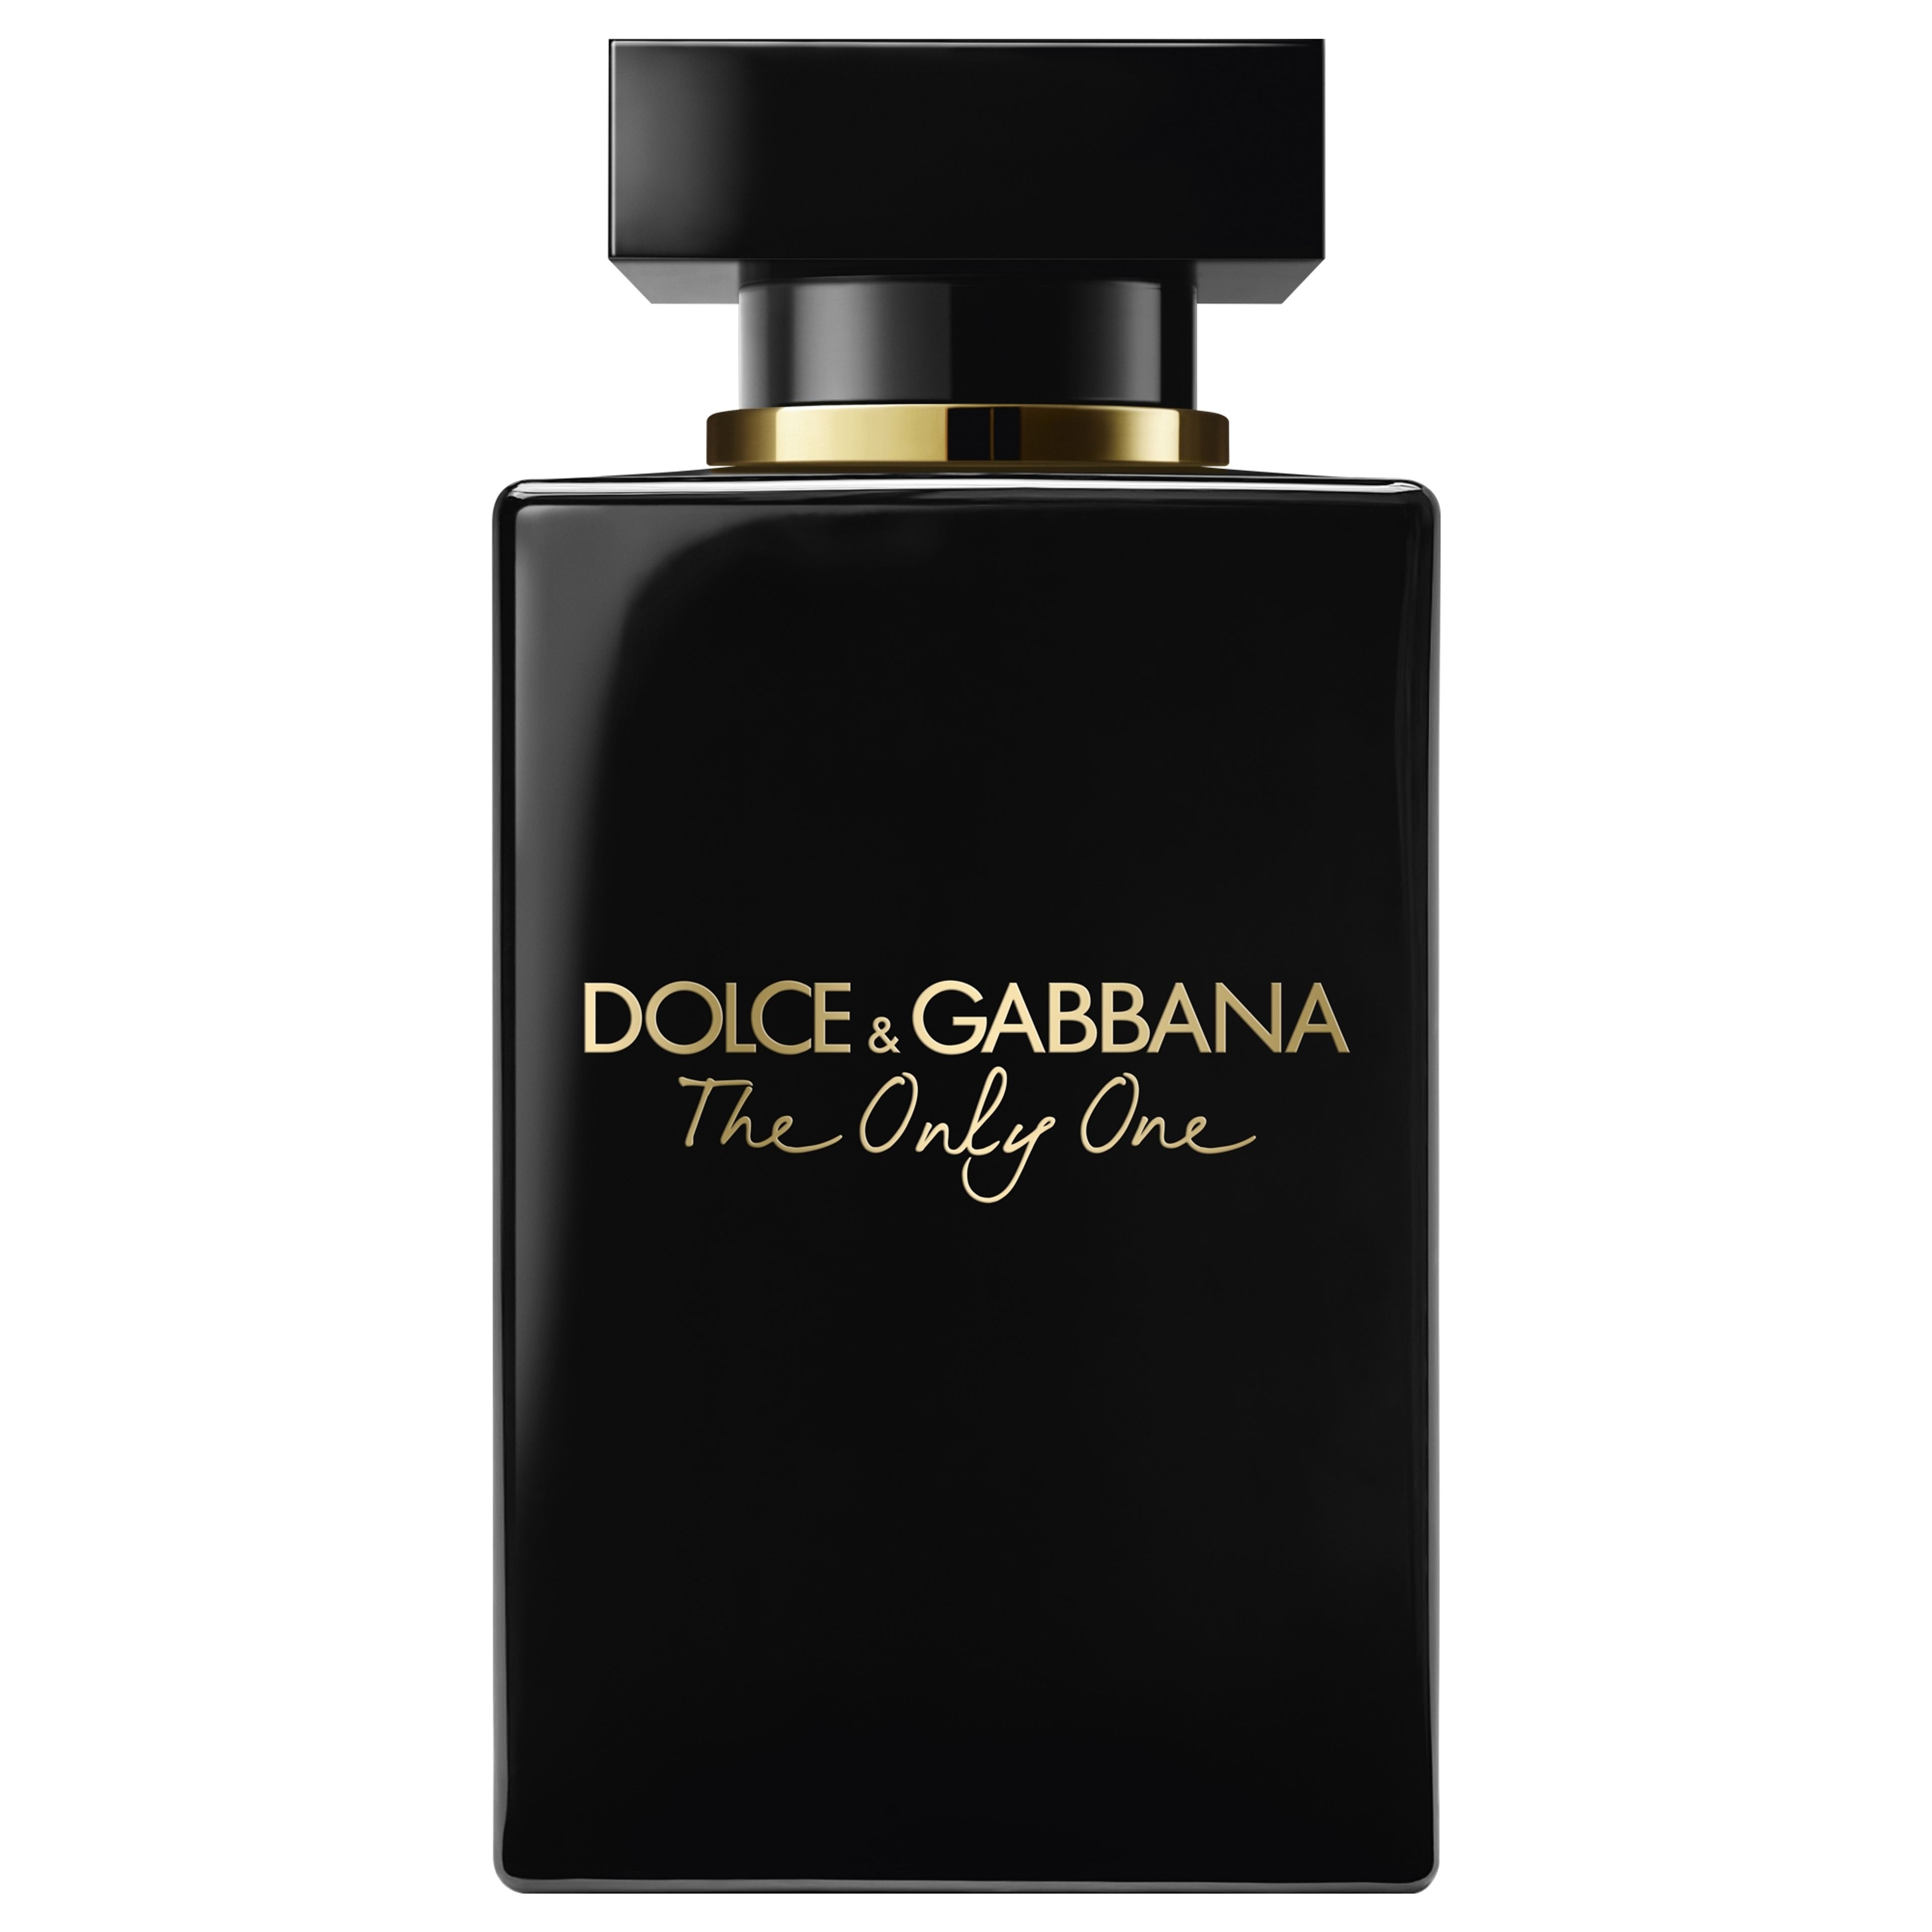 Dolce & Gabbana The Only One Eau De Parfum Intense Pour Femme 1